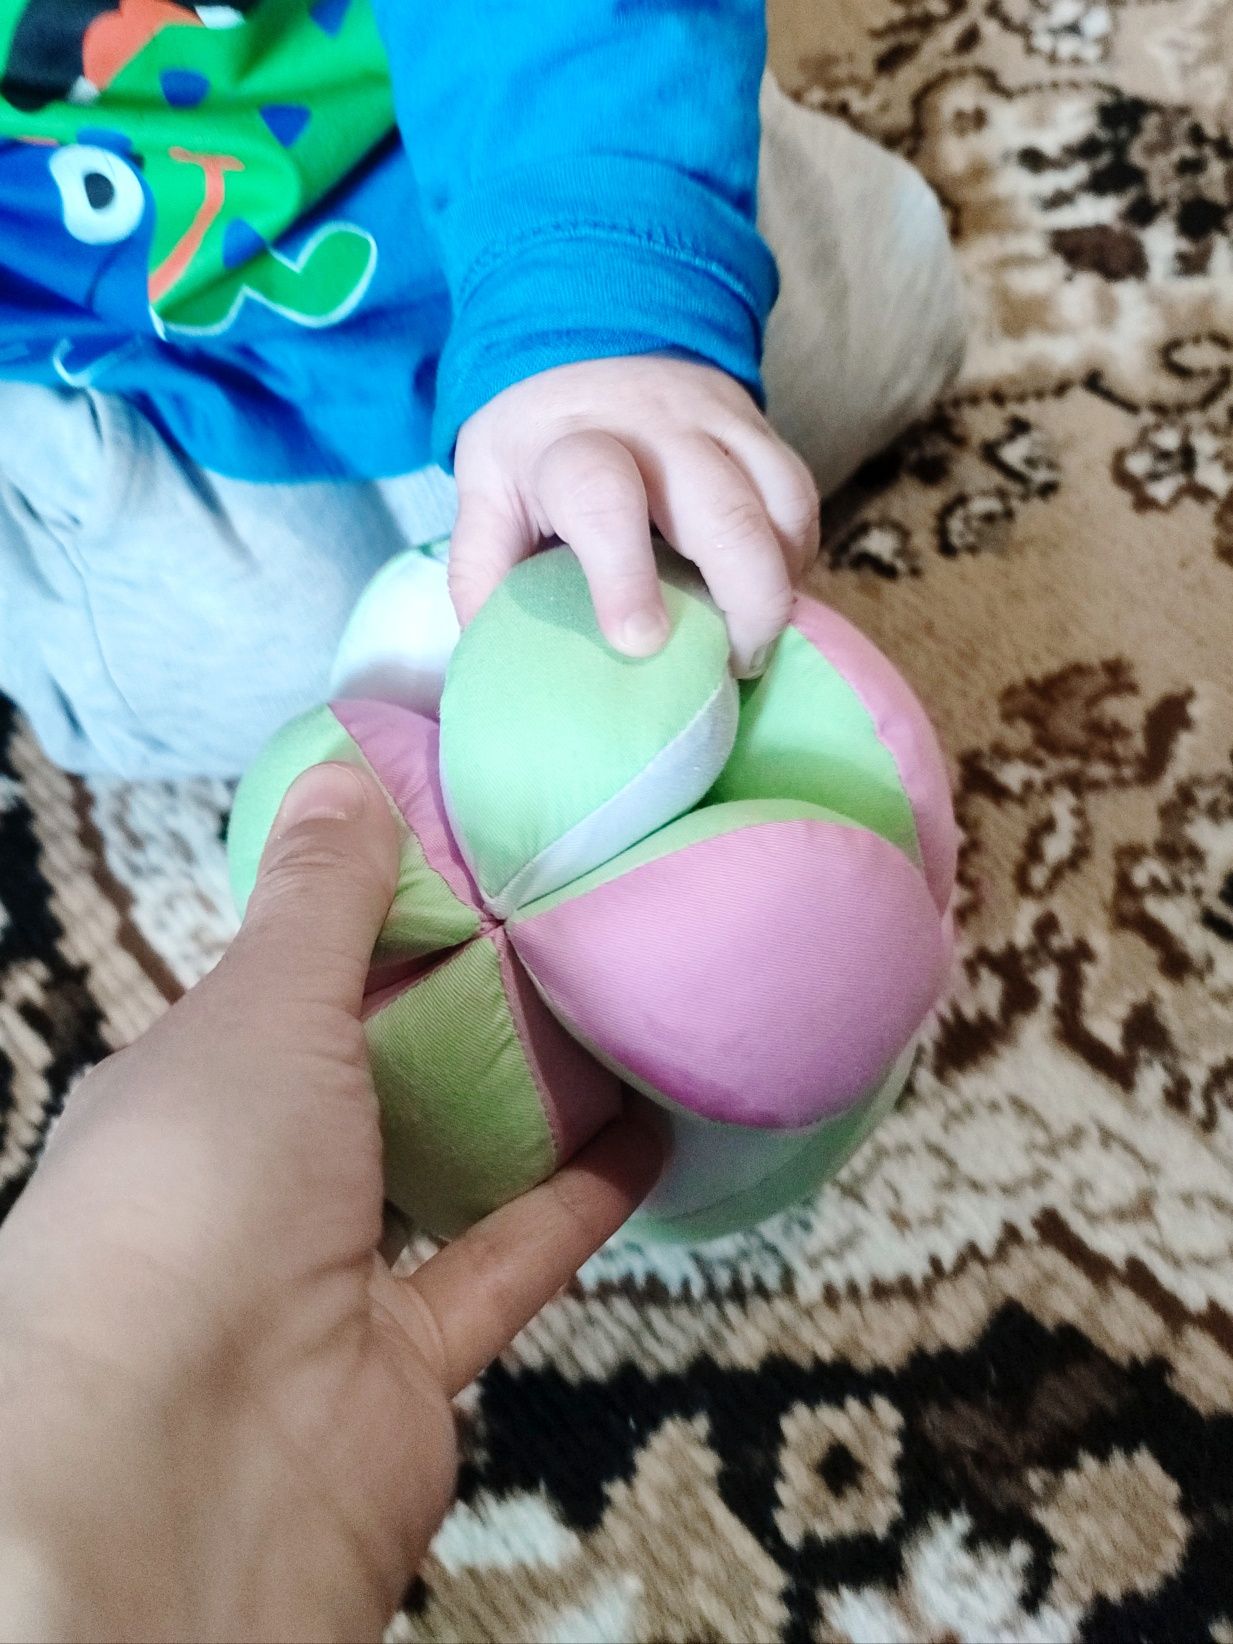 SALE М'яч Такане, Монтессорі/ детский развивающий мячик